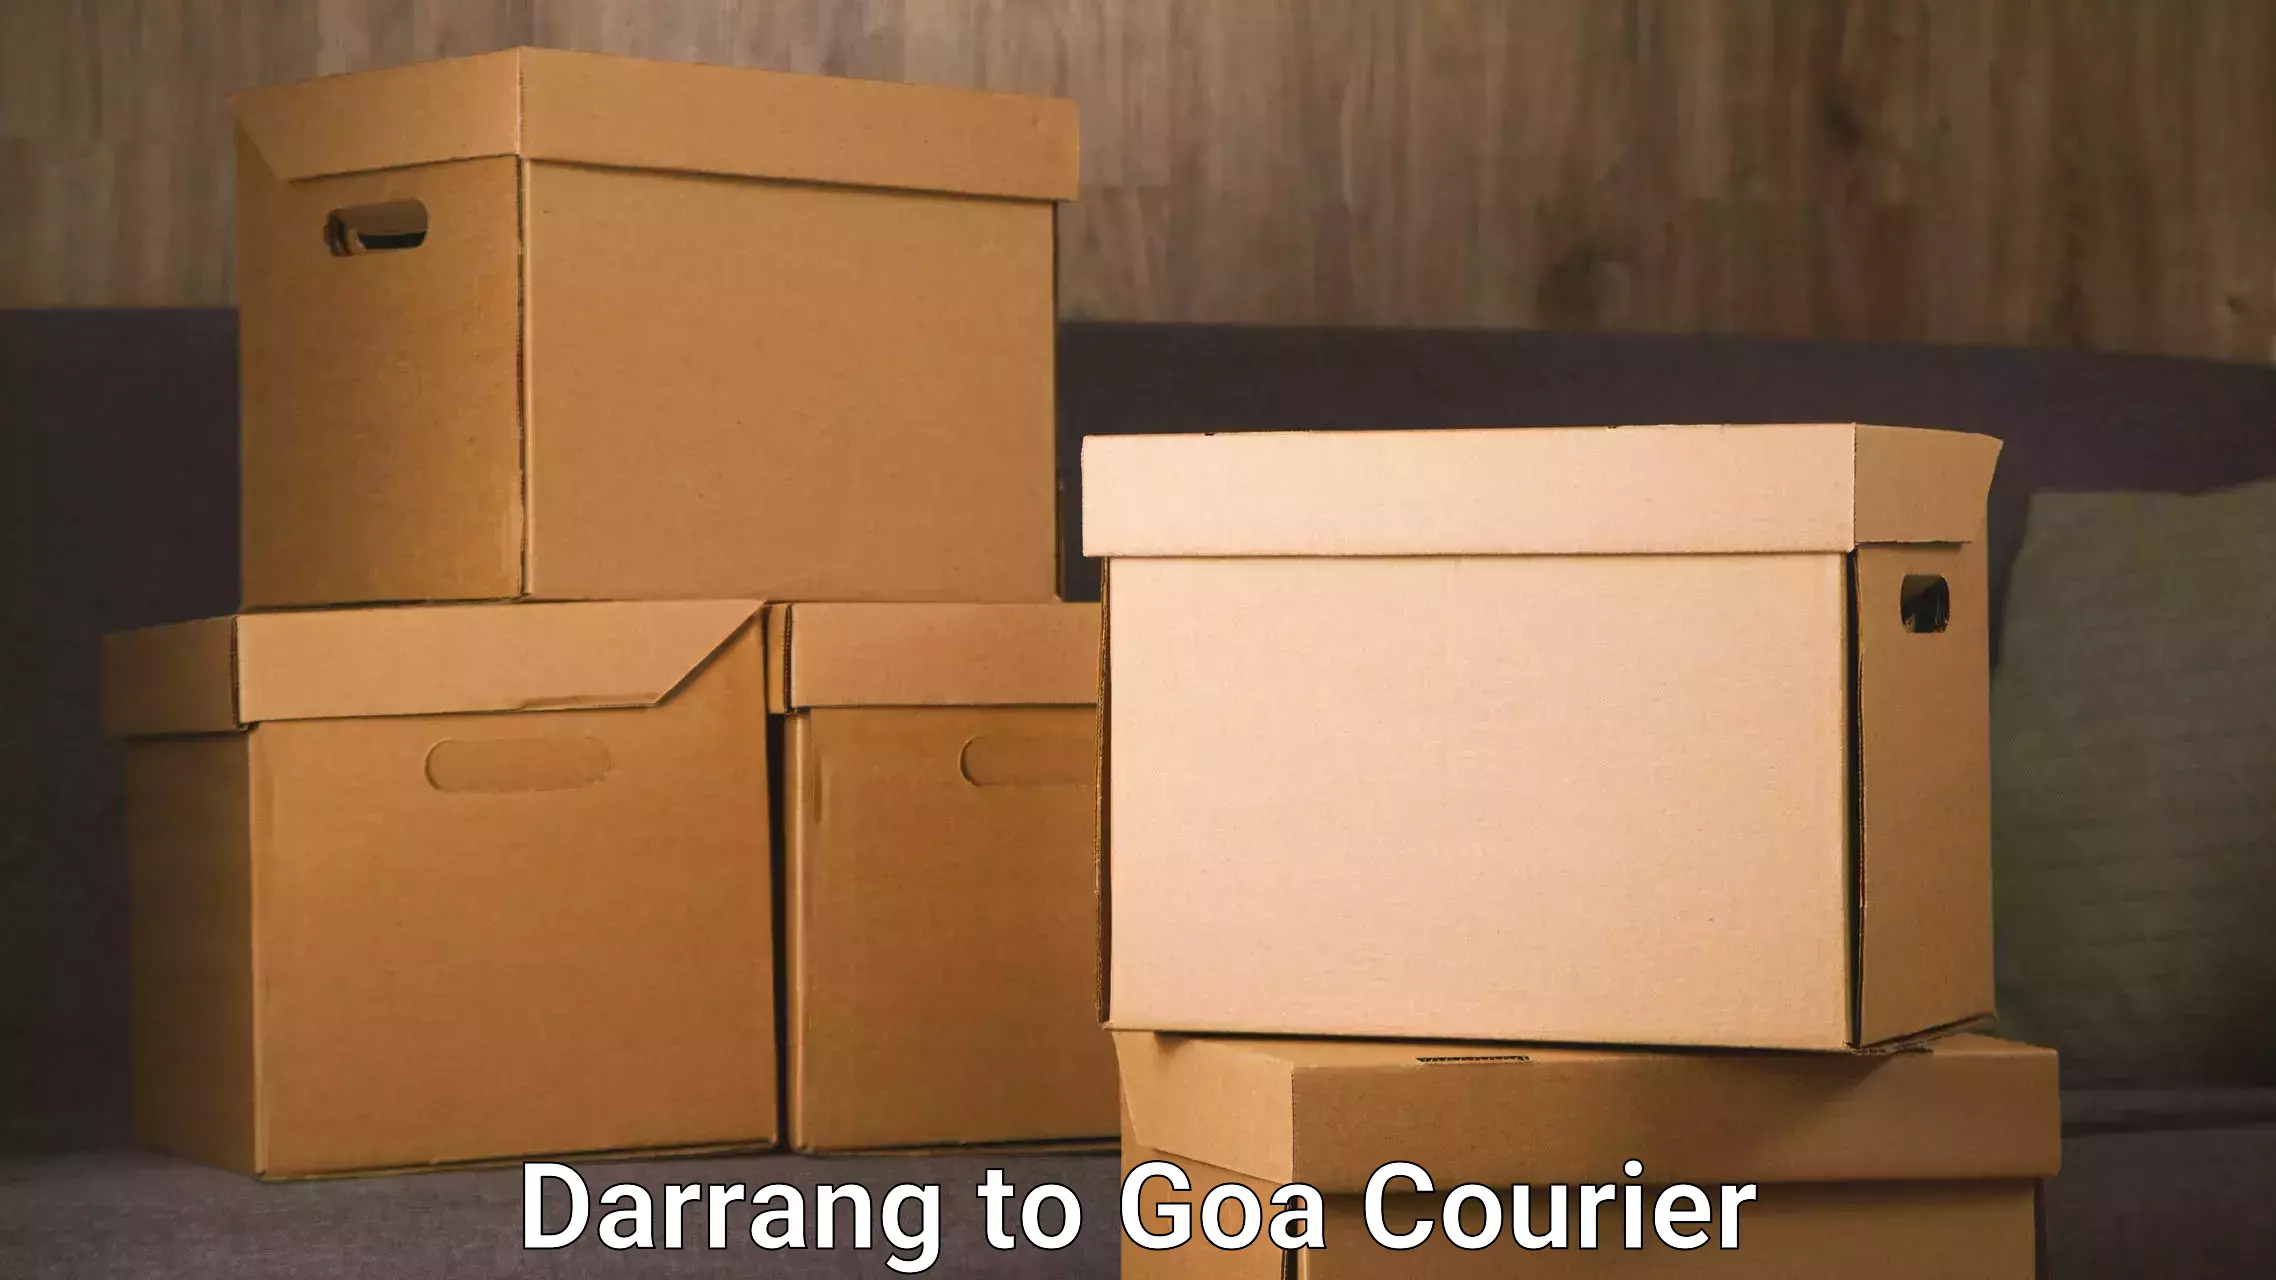 24/7 courier service Darrang to Mormugao Port